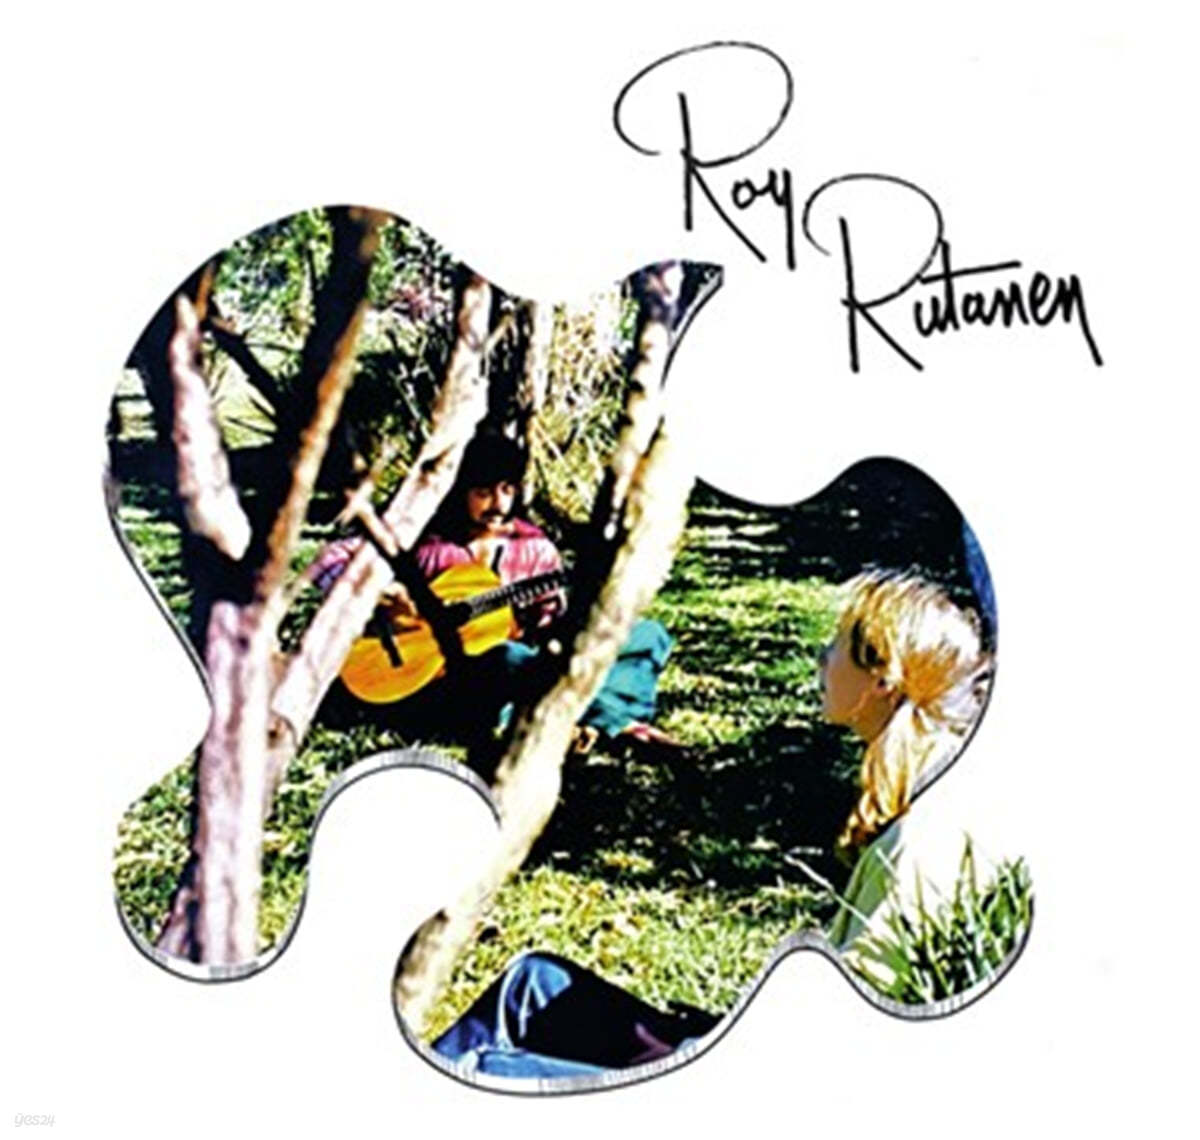 Roy Rutanen (로이 루타넨) - Roy Rutanen [LP]